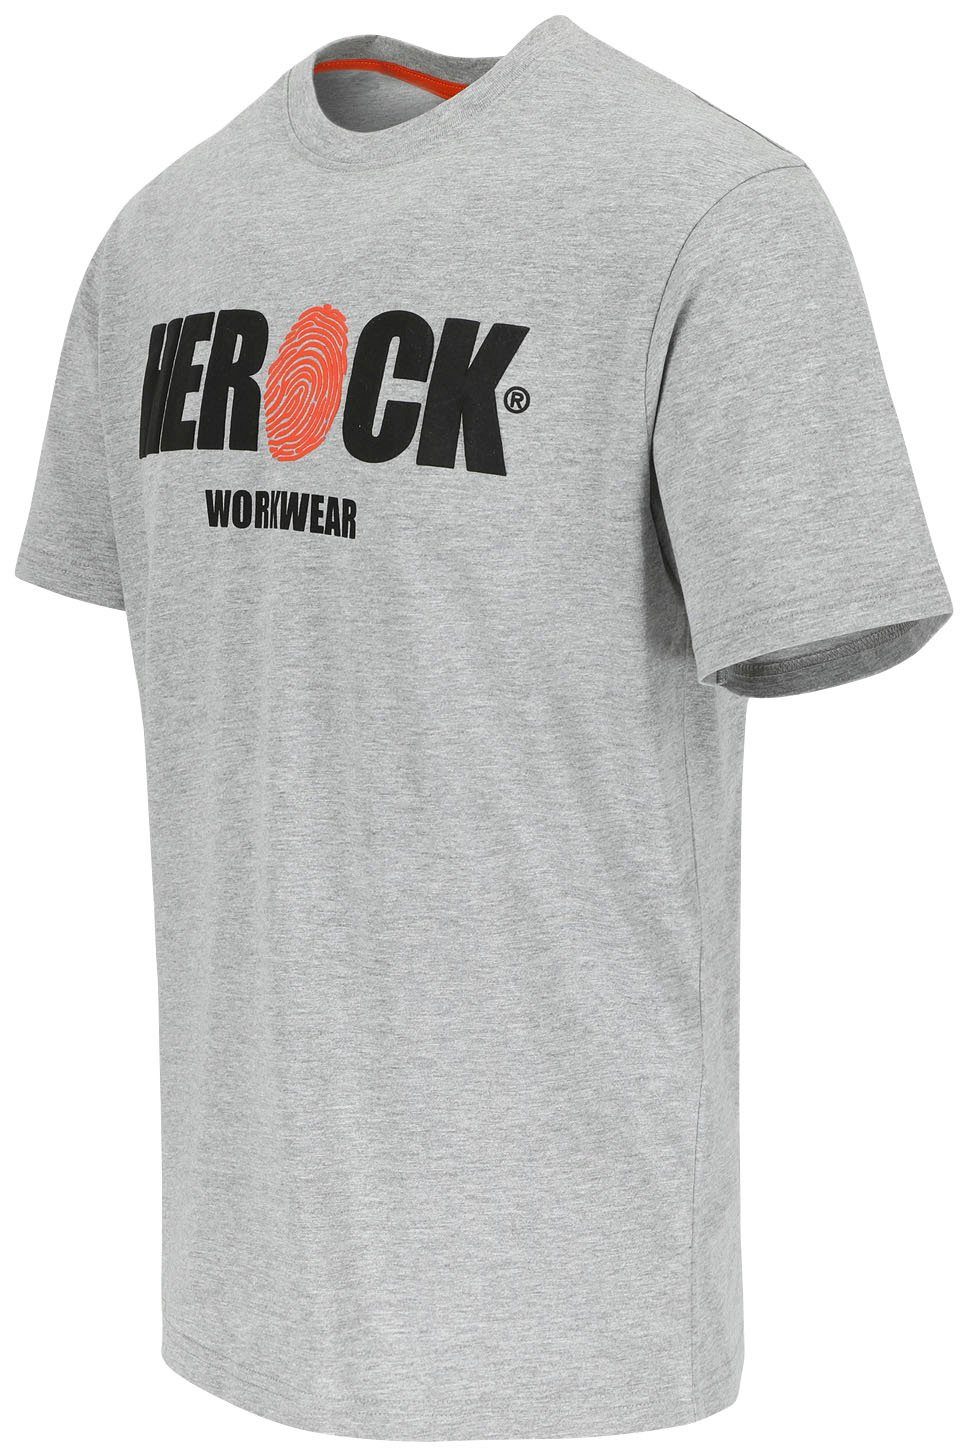 Tragegefühl T-Shirt Herock®-Aufdruck, grau Herock mit Baumwolle, ENI Rundhals, angenehmes